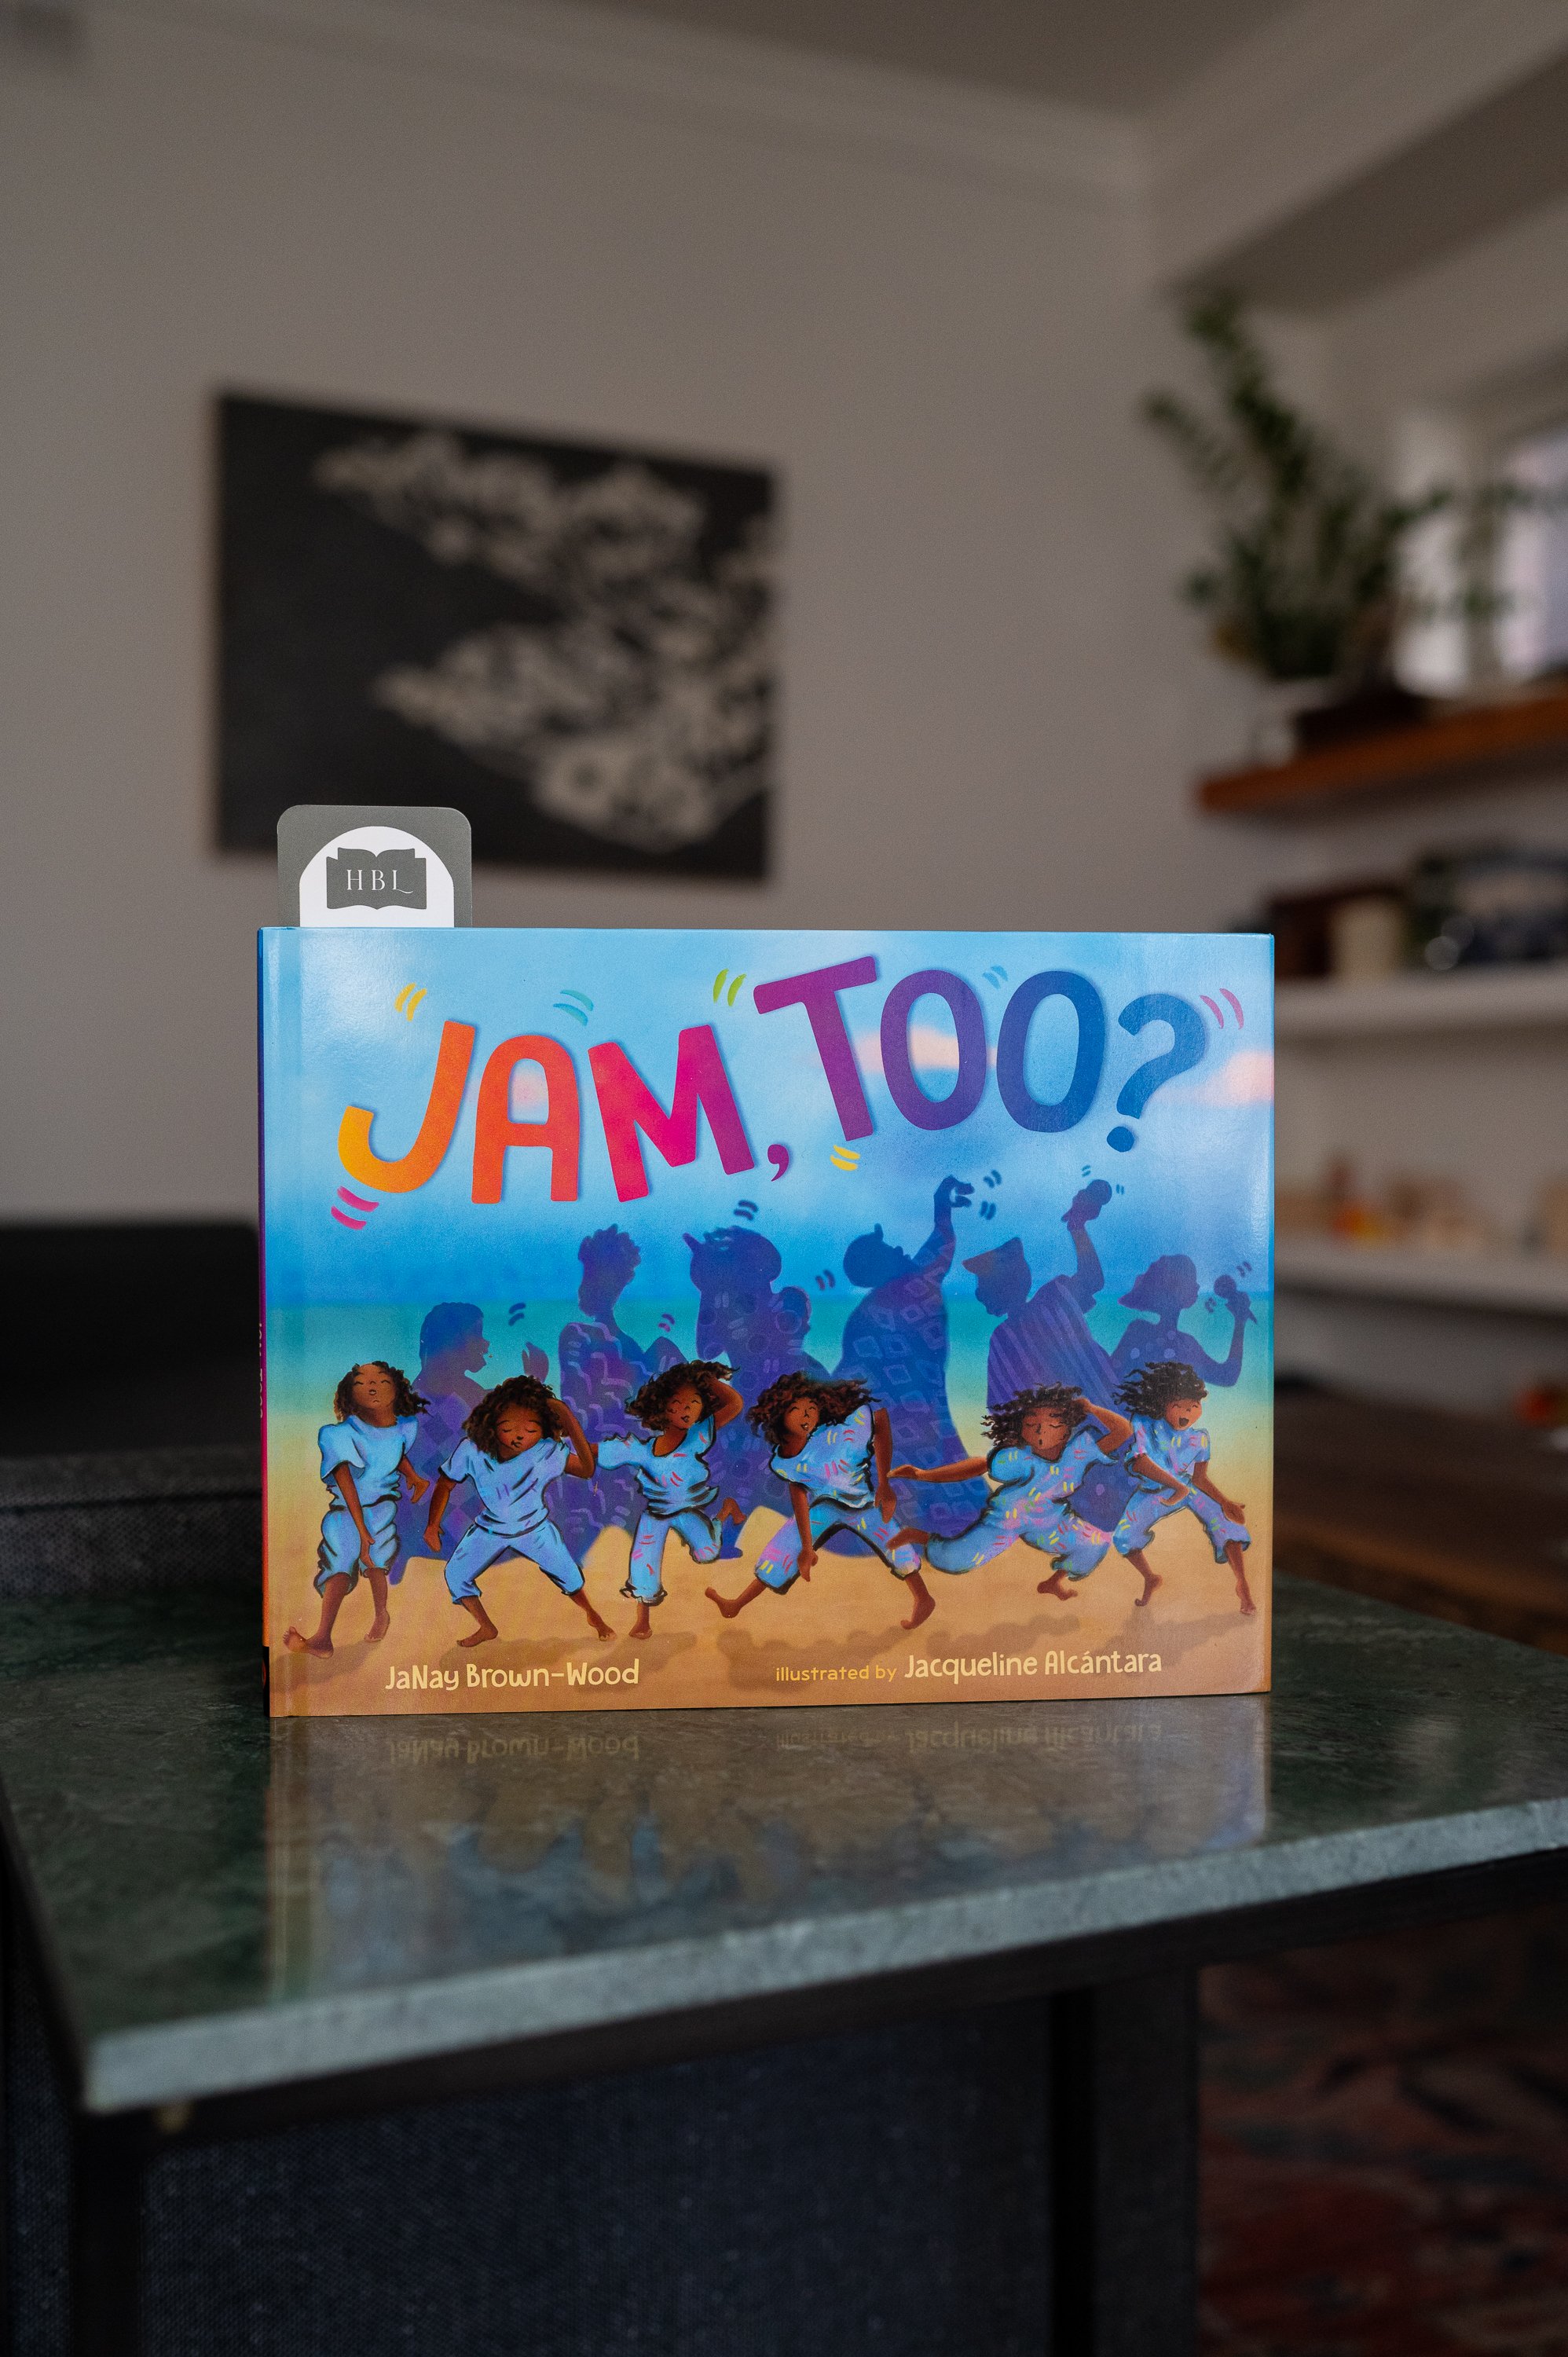 Jam, Too? by JaNay Brown-Wood